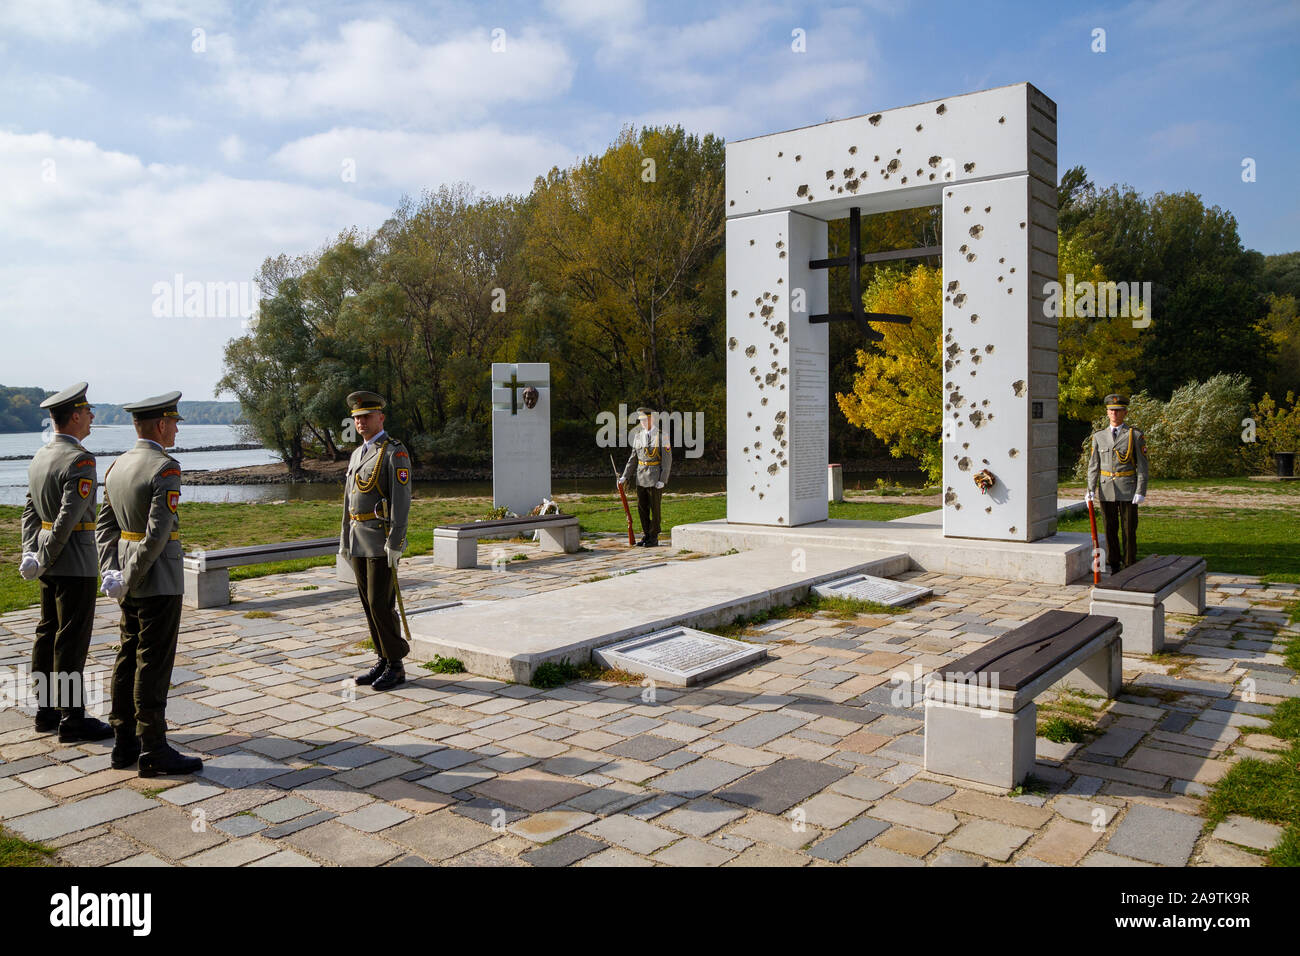 Die Slowakische ehrenwache am Denkmal "Brana Slobody" (Tor der Freiheit) Gedenken an Menschen, die an der Grenze auf der Flucht getötet wurden. Stockfoto